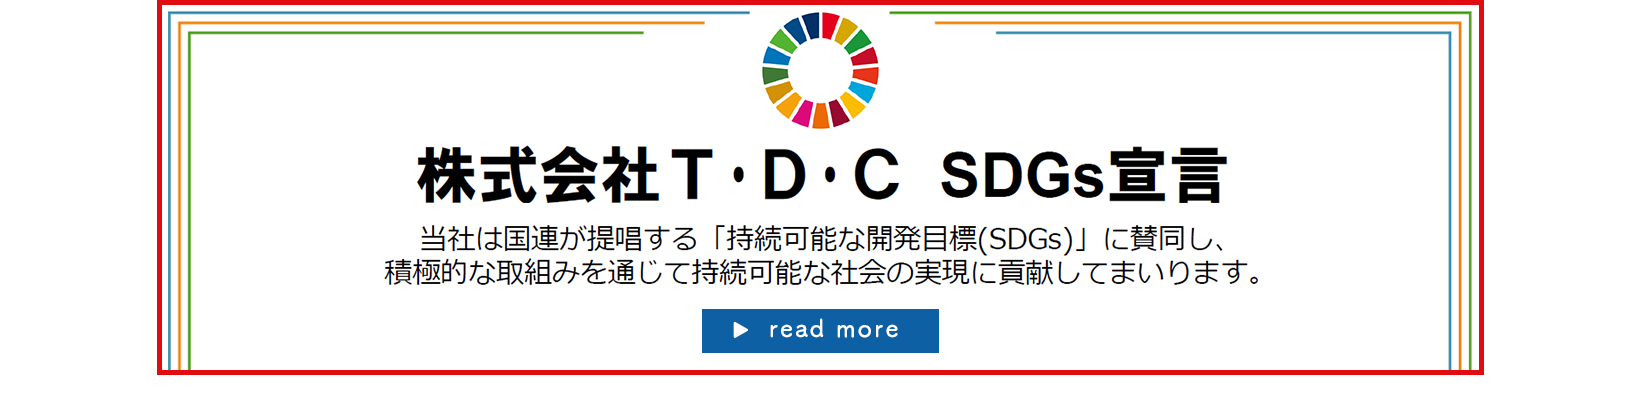 株式会社TDC「持続可能な開発目標（SDGs）」